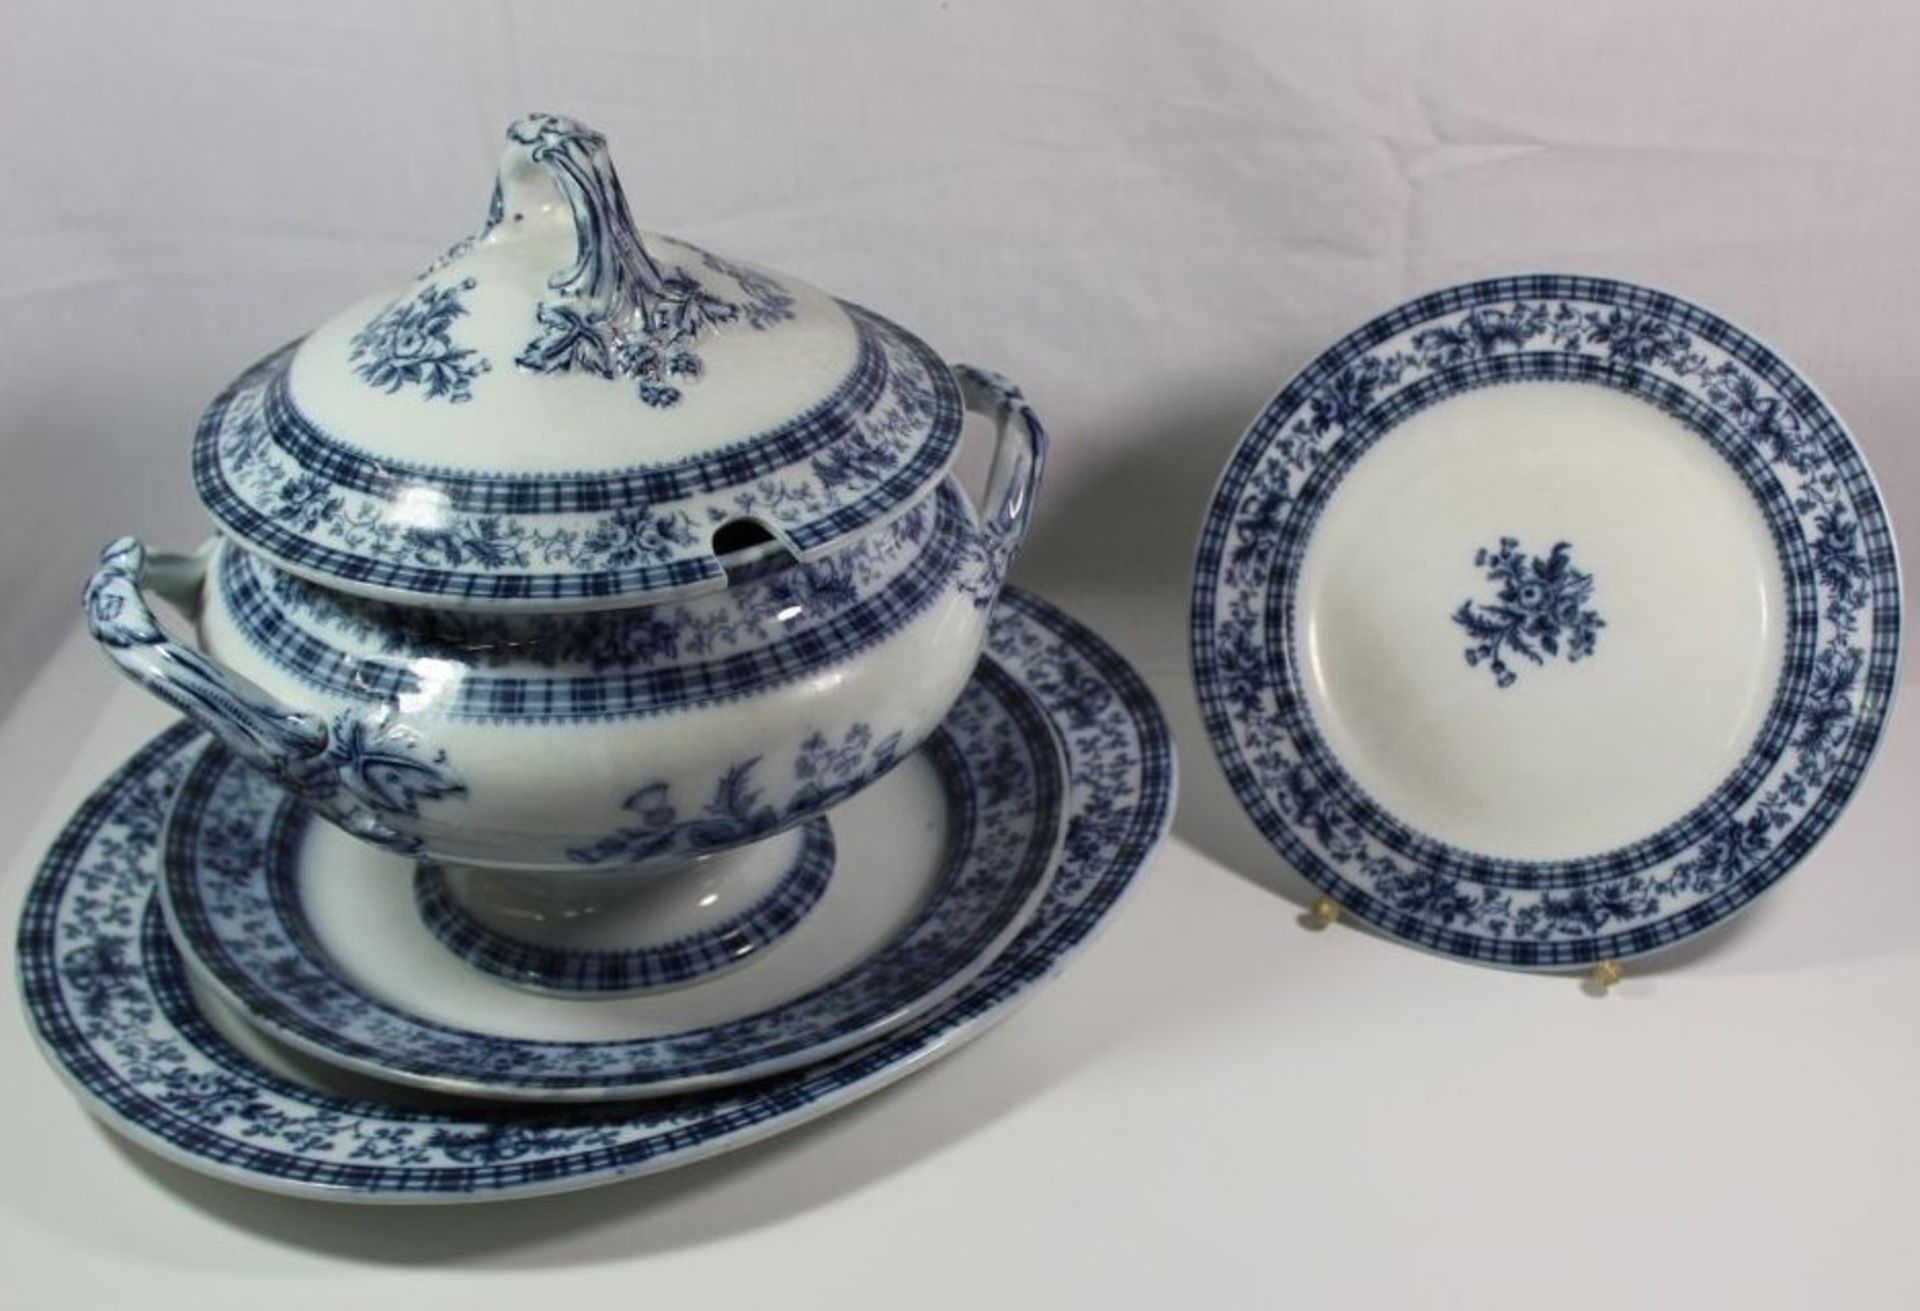 gr. Deckelterinne, 2 div. ovale Plattem und runder Teller, Douglas, England, blaues florales